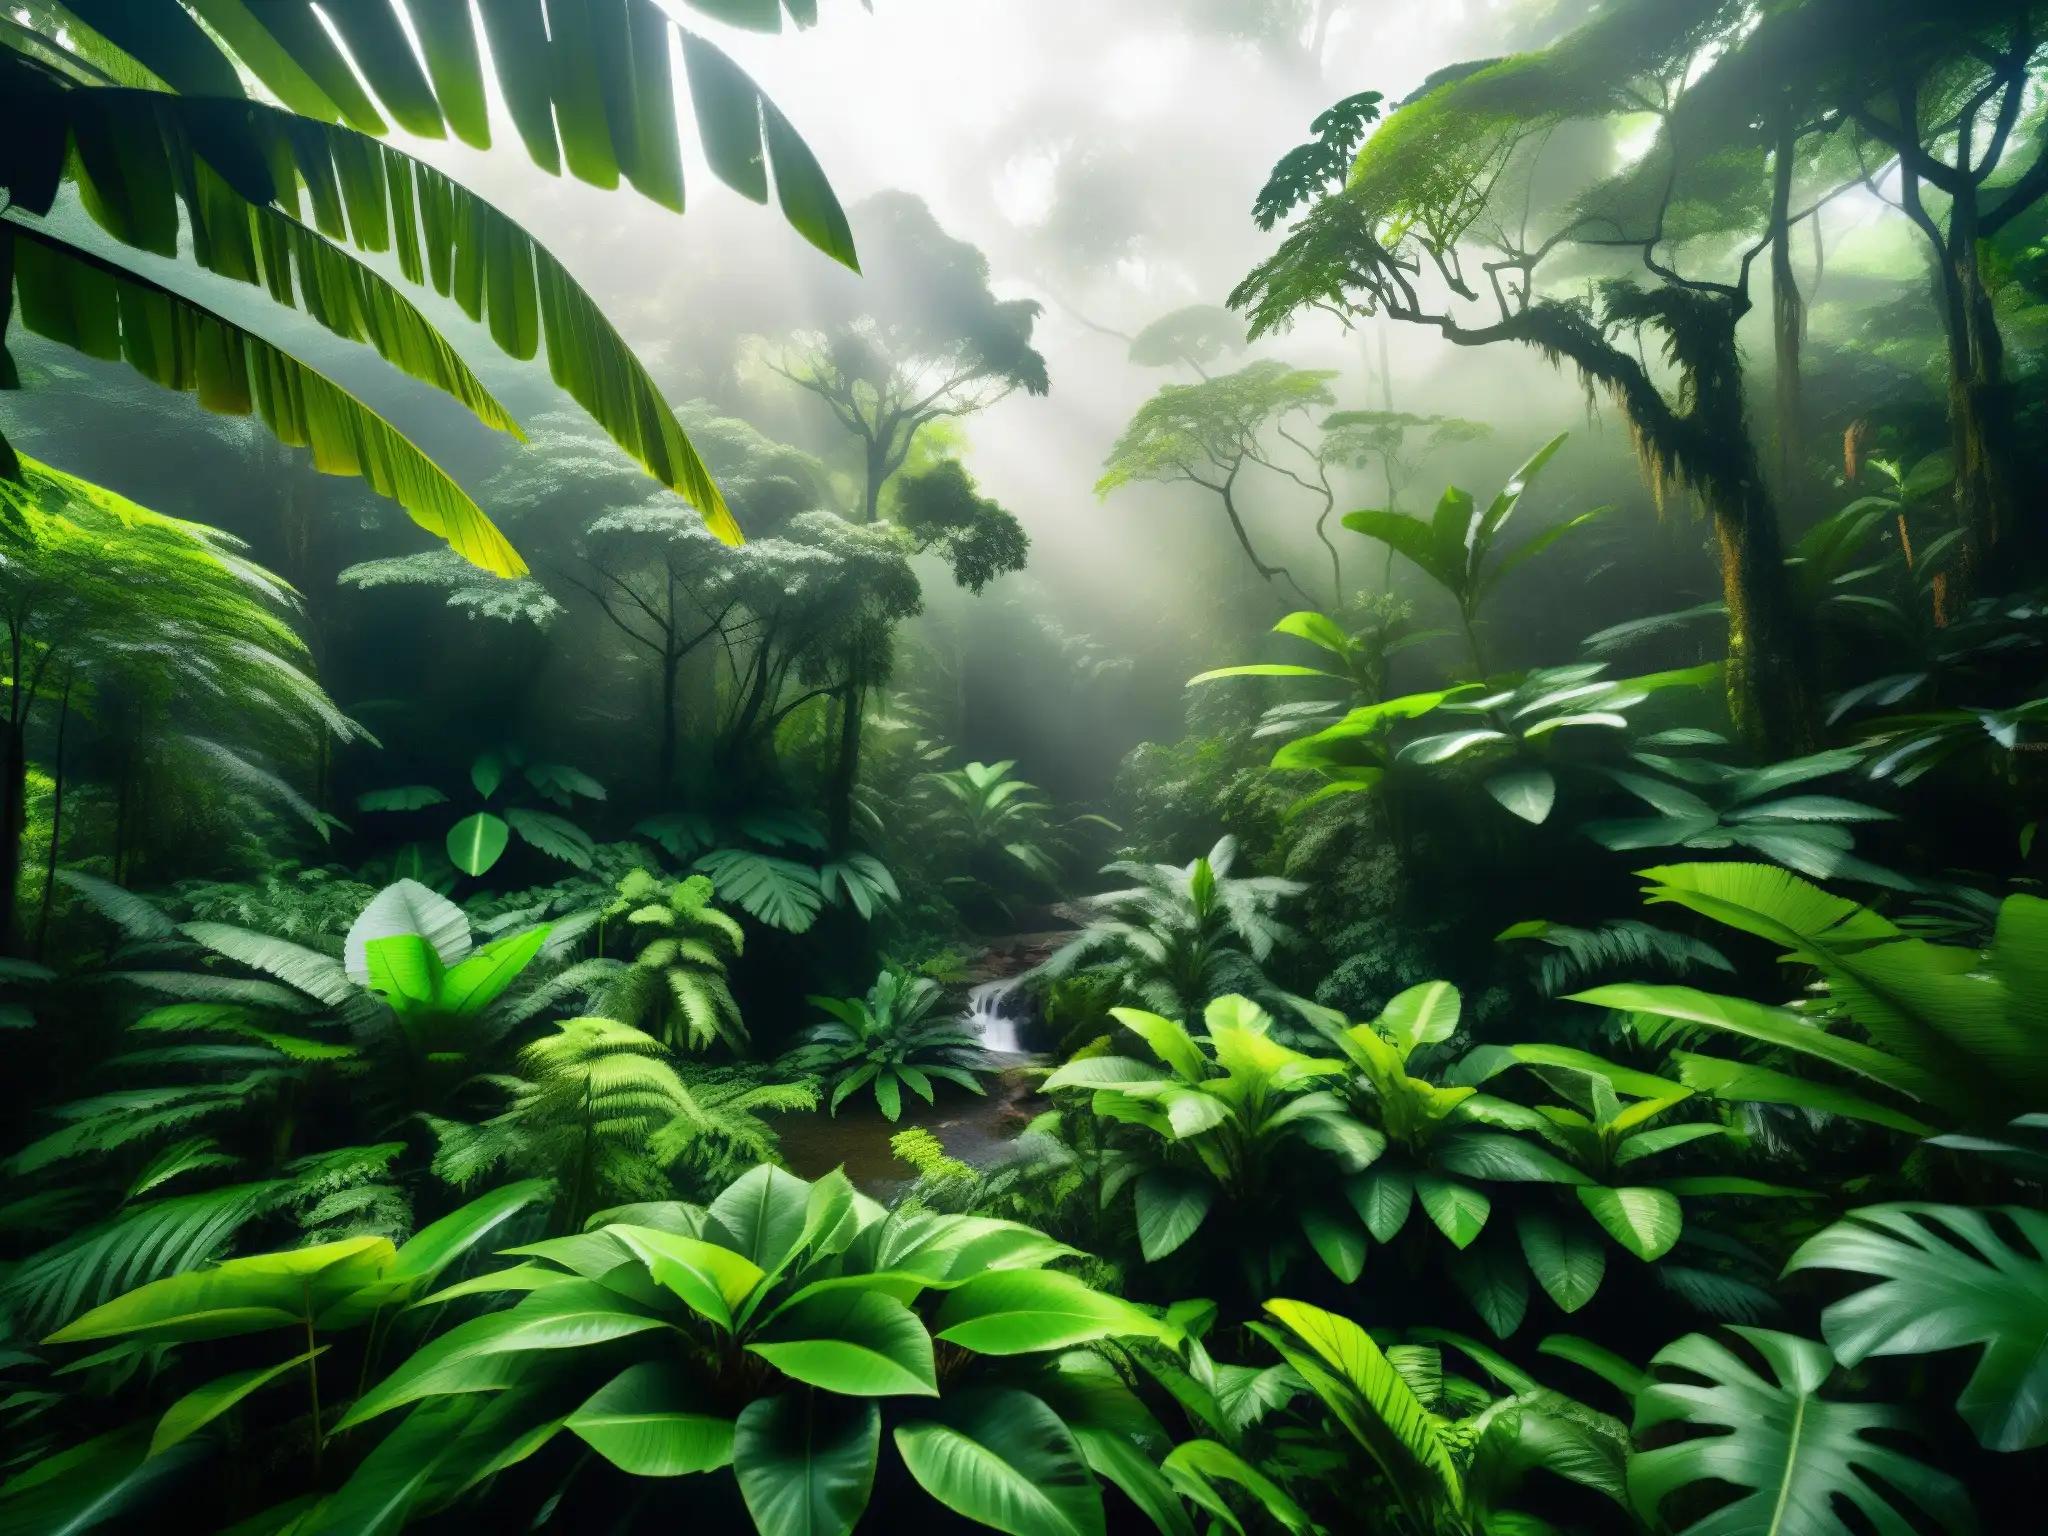 Un exuberante bosque amazónico con árboles imponentes, follaje vibrante y una atmósfera neblinosa